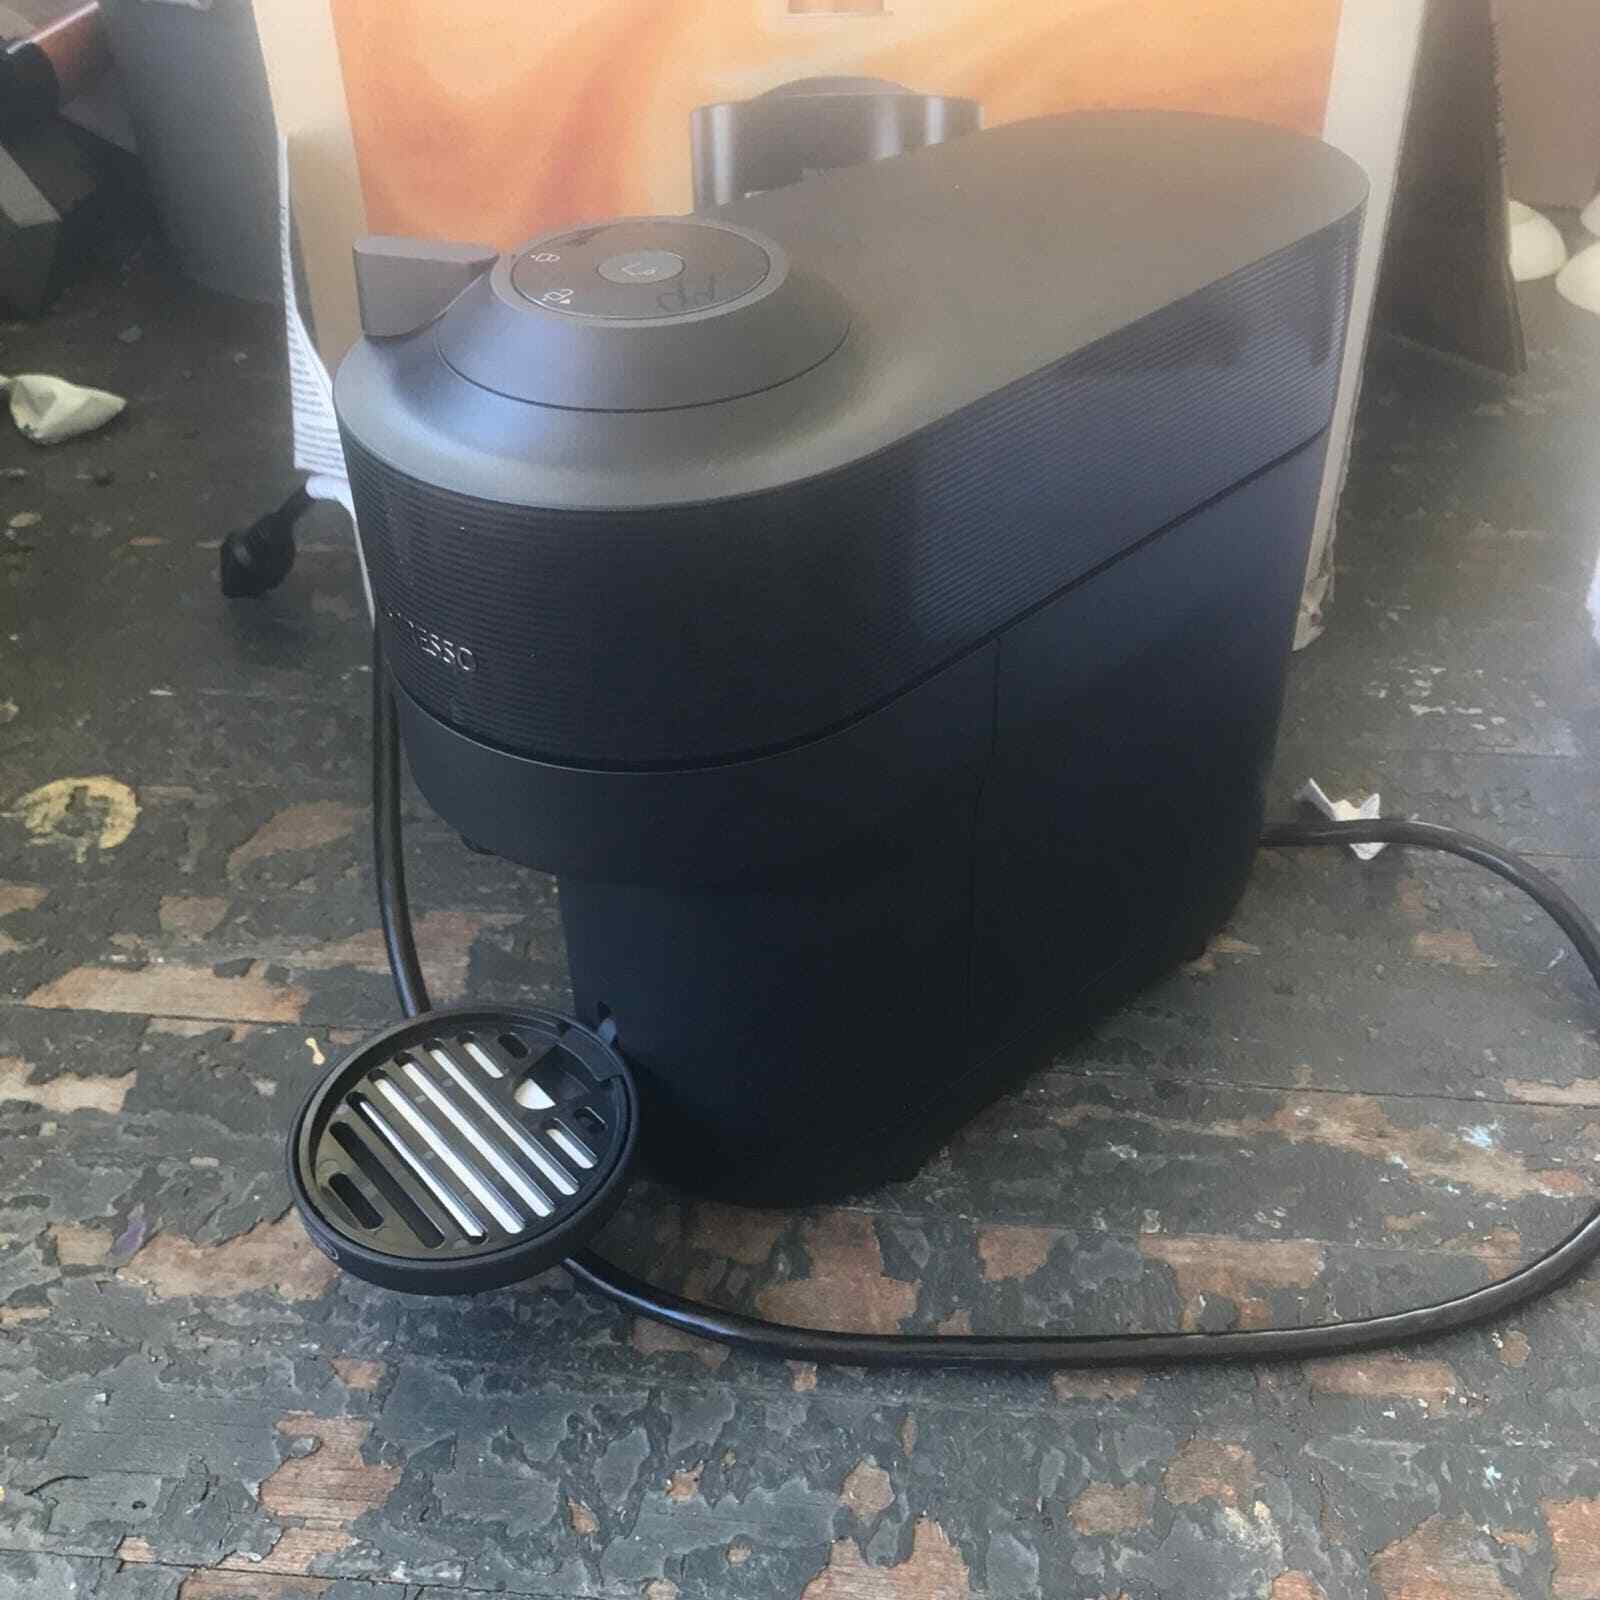 New DeLonghi BLACK NESPRESSO Vertuo Pop+ Espresso Coffee Maker Machine ENV92B